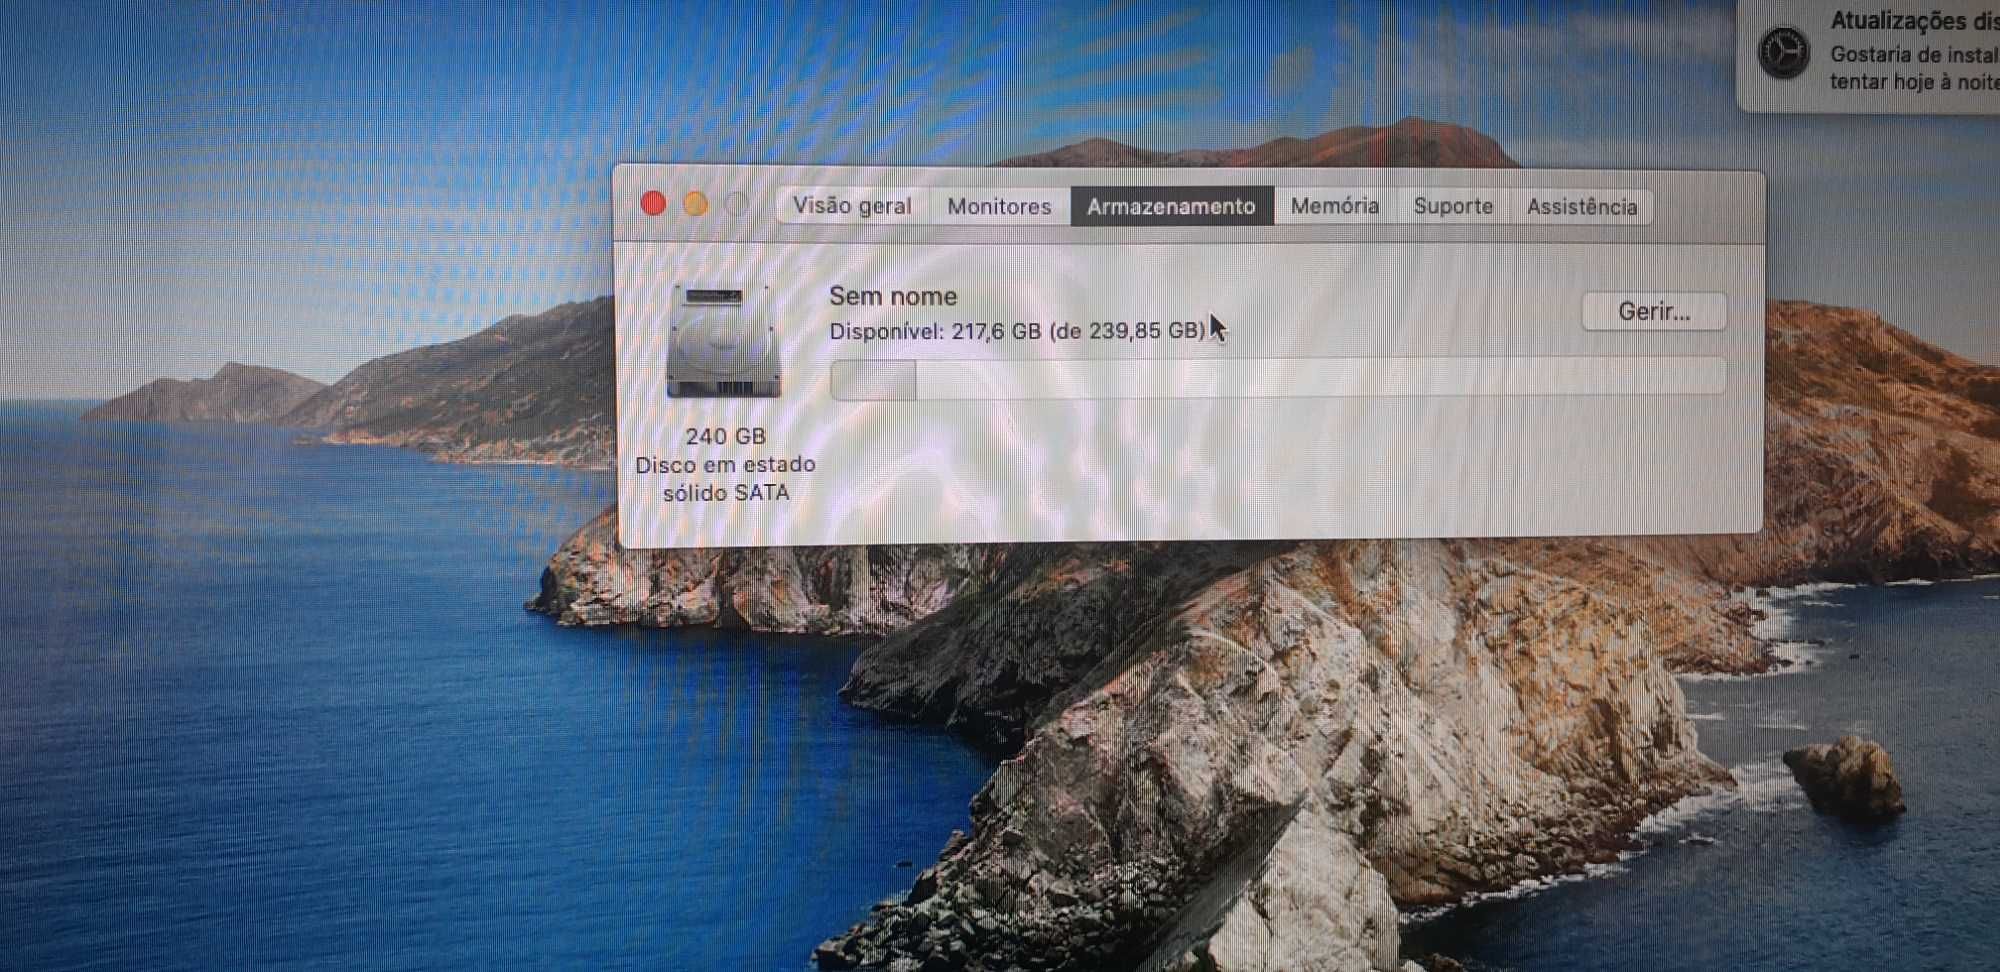 Macbook pro 13 2011 em bom estado i5